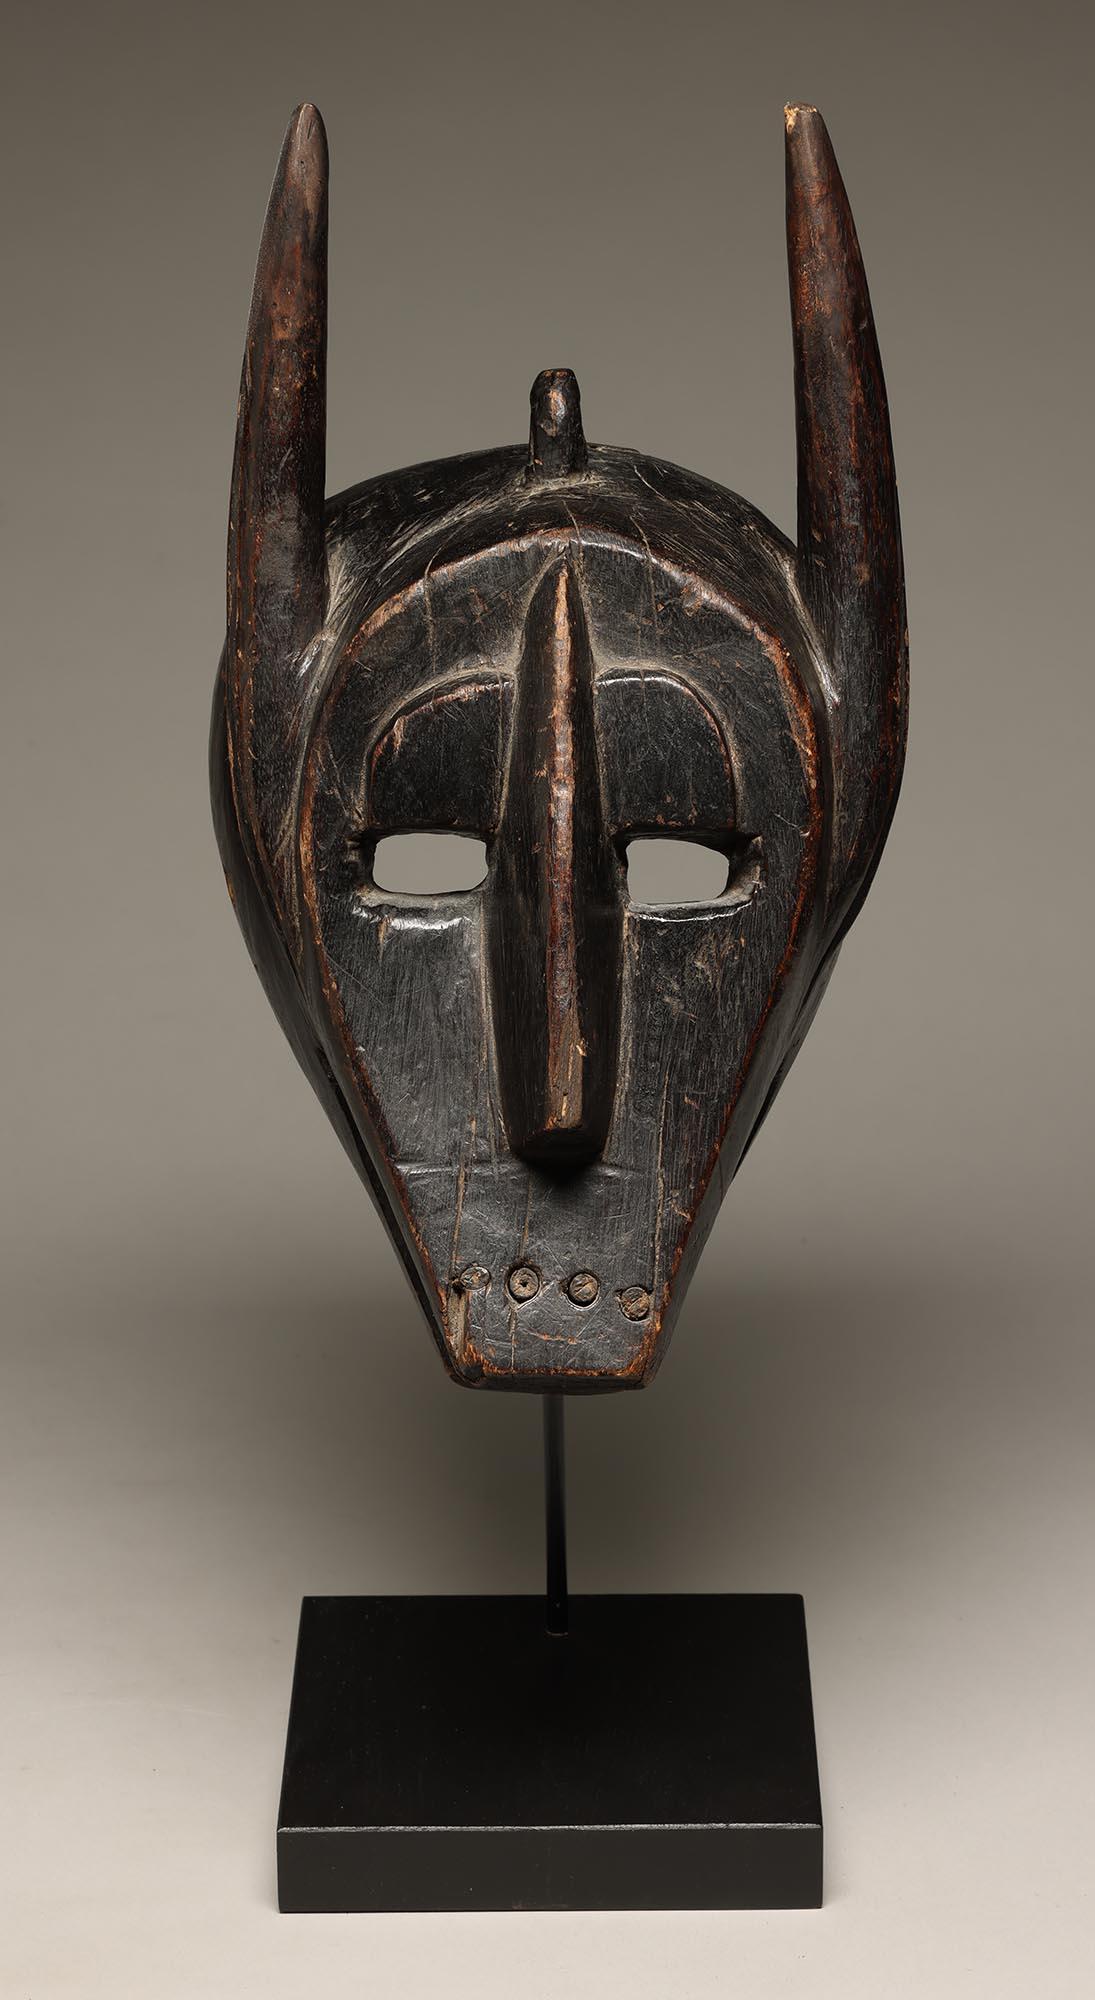 Geometrische Barmbara Sukuru Tiermaske mit Hörnern, Zähnen, Mali, Westafrika.  Eingesetzte Holzzähne, abstraktes Gesicht mit offenen Augen, hochgezogenen Augenbrauen und gerahmtem Gesicht.  Alte einheimische Reparatur mit Eisenstreifen auf der